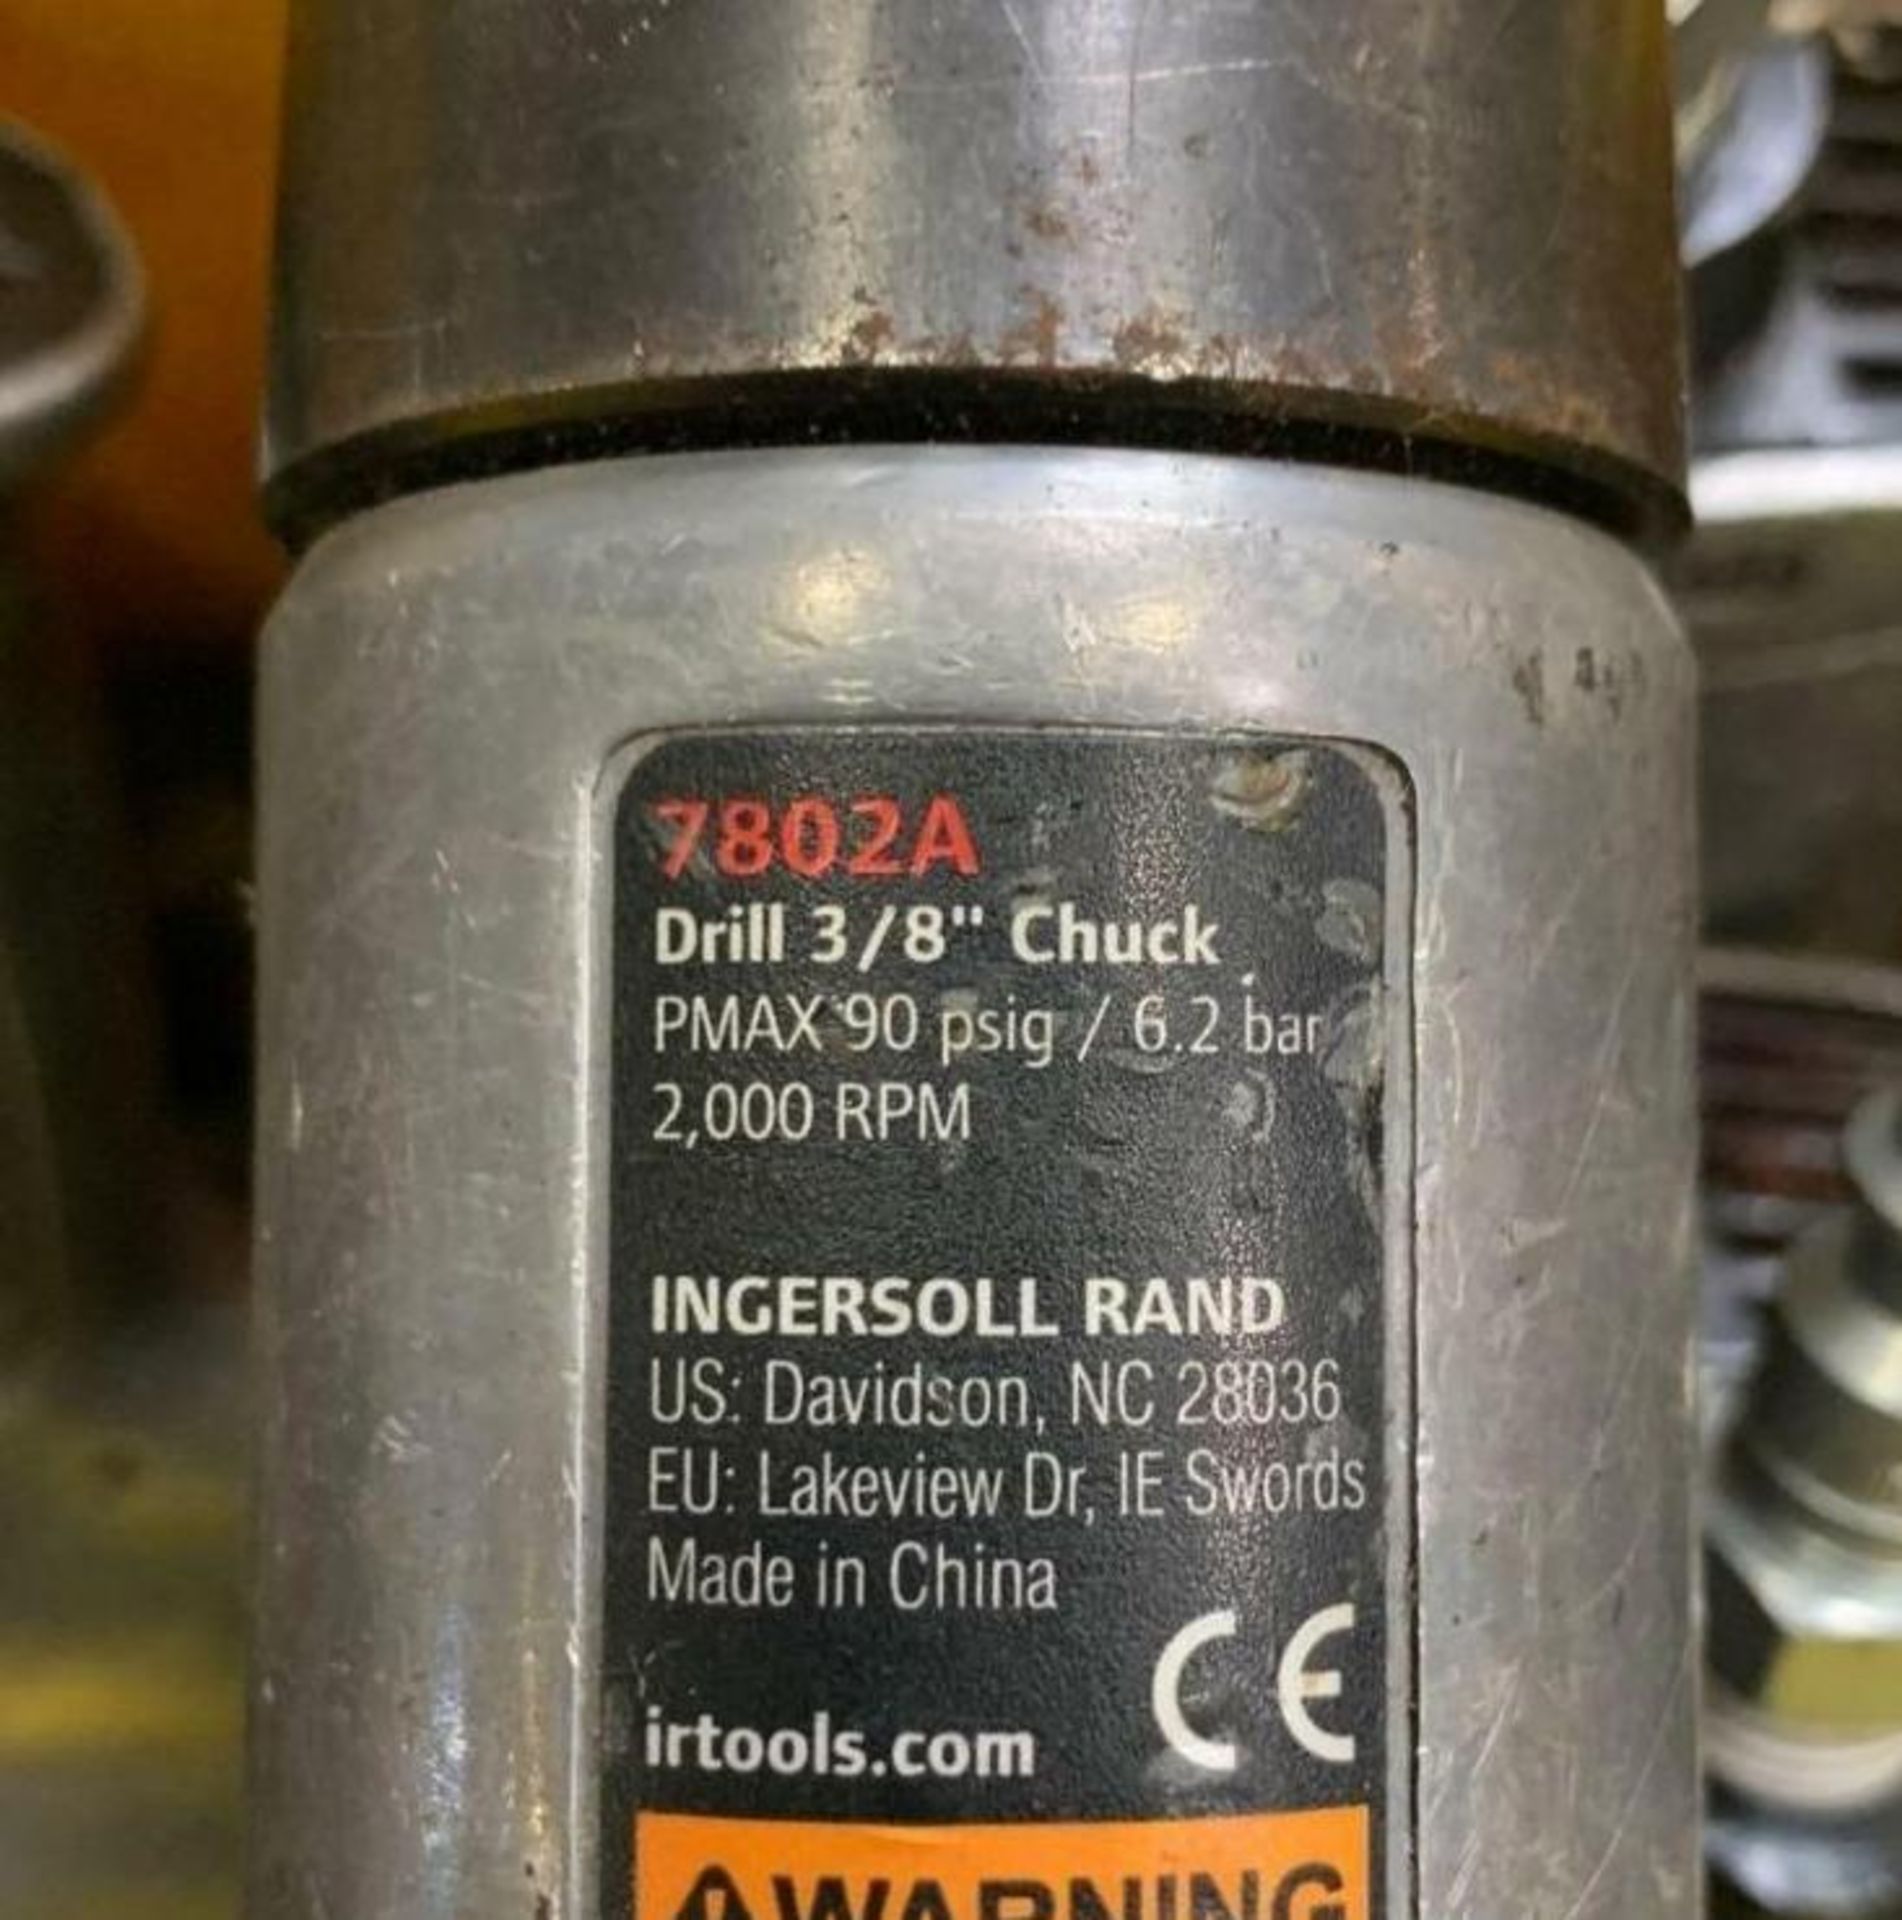 (100) Ingersoll Rand IR 7802A 3/8" Air Drill, Jacobs chuck, Pistol Grip 2000 RPM Make: Ingersoll Ran - Image 9 of 9